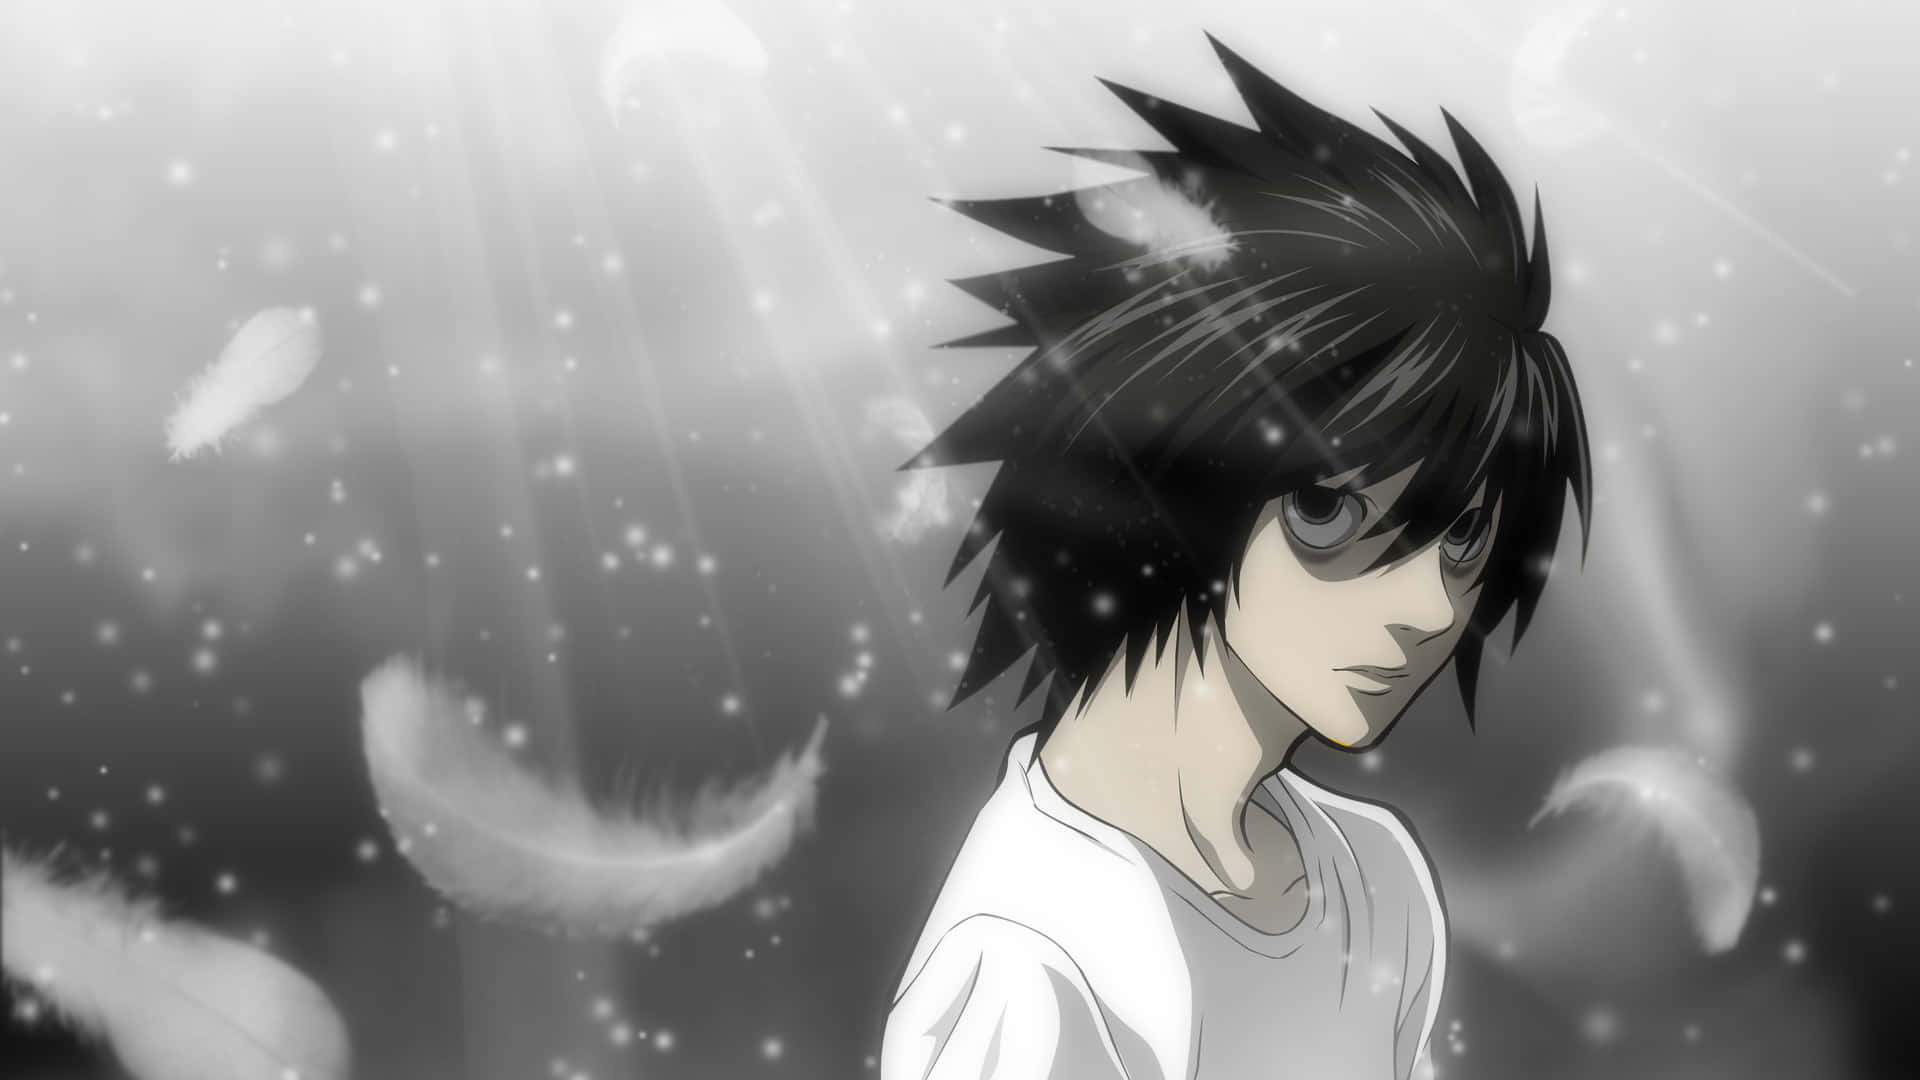 Lightyagami Ist Der Protagonist Der Manga- Und Anime-serie Death Note.